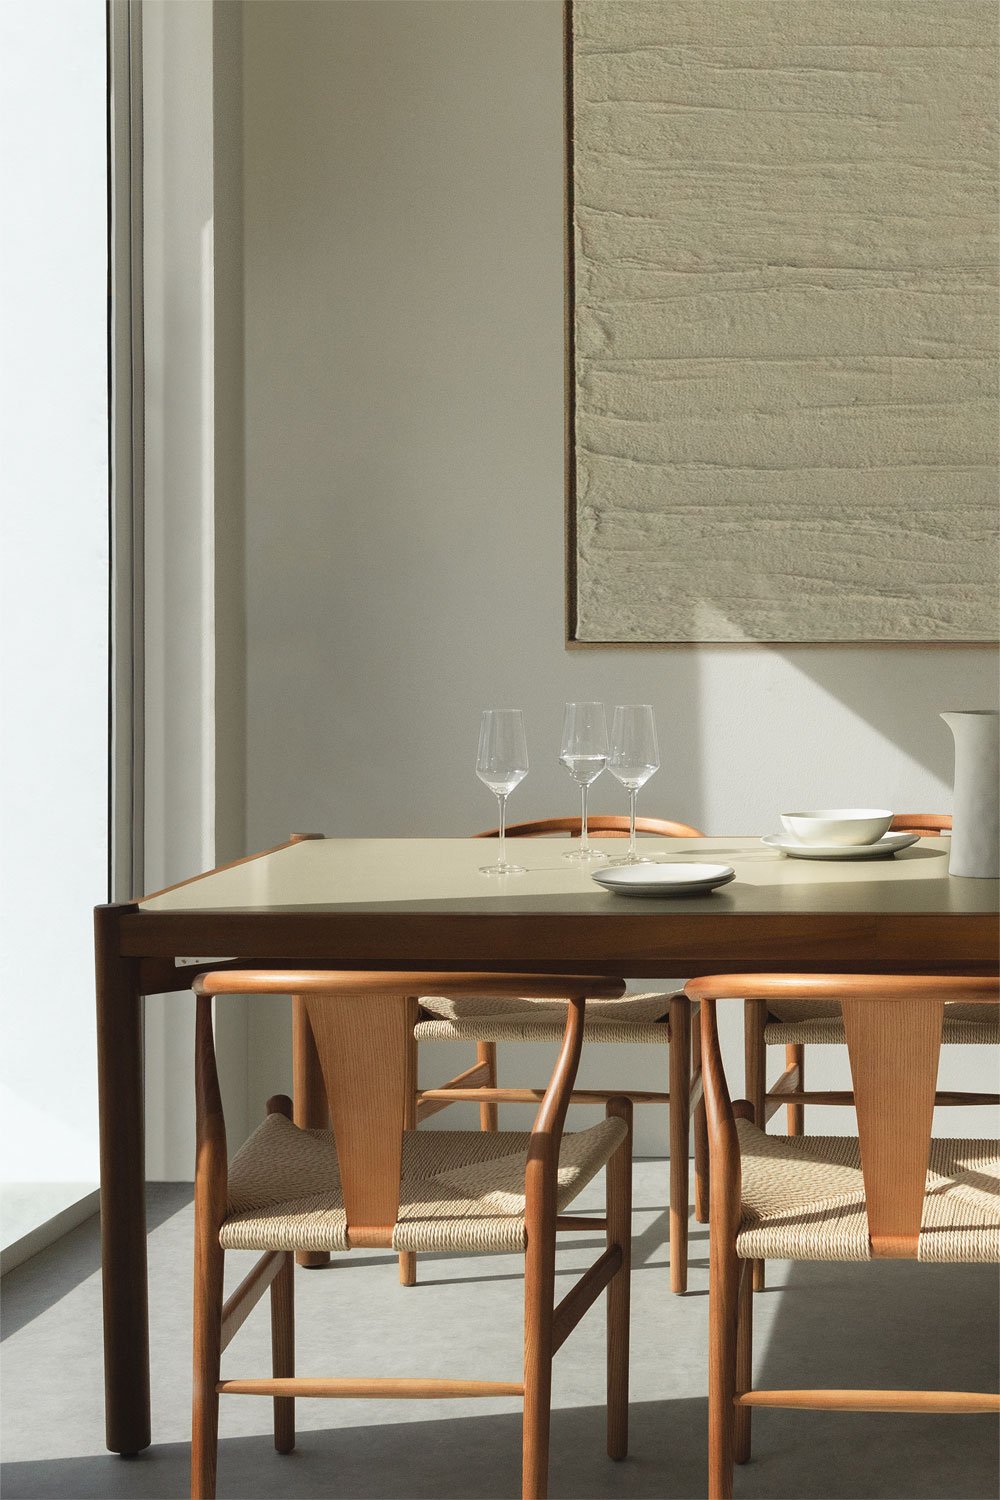 Gamila rechthoekige tafelset (210x100 cm) en 6 eetkamerstoelen in hout en cement Uish Edition, galerij beeld 1